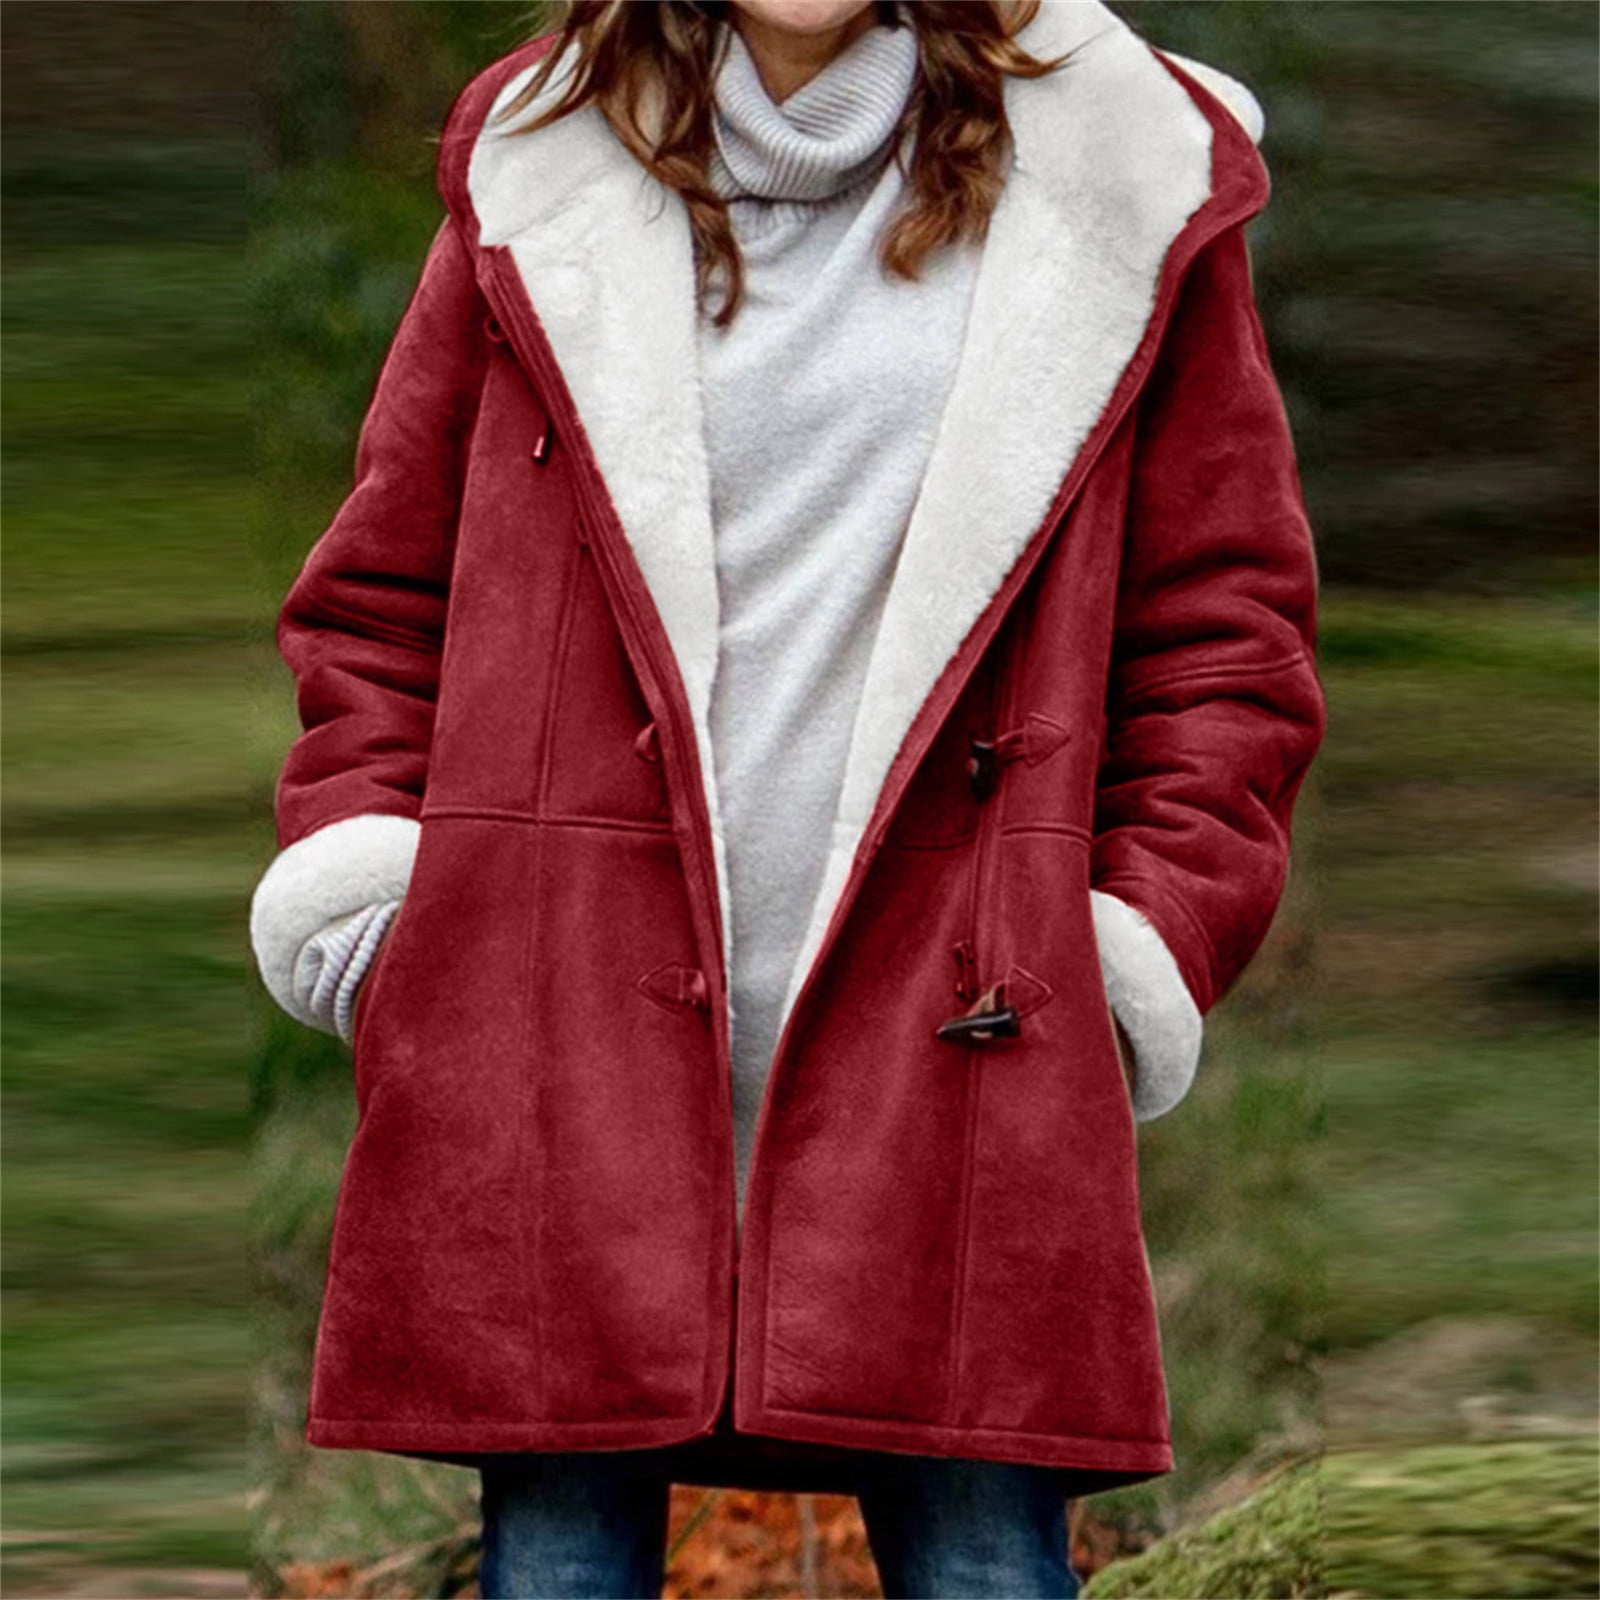 Fleece Jacket for Women Clearance Sale,Winter Warm Sherpa